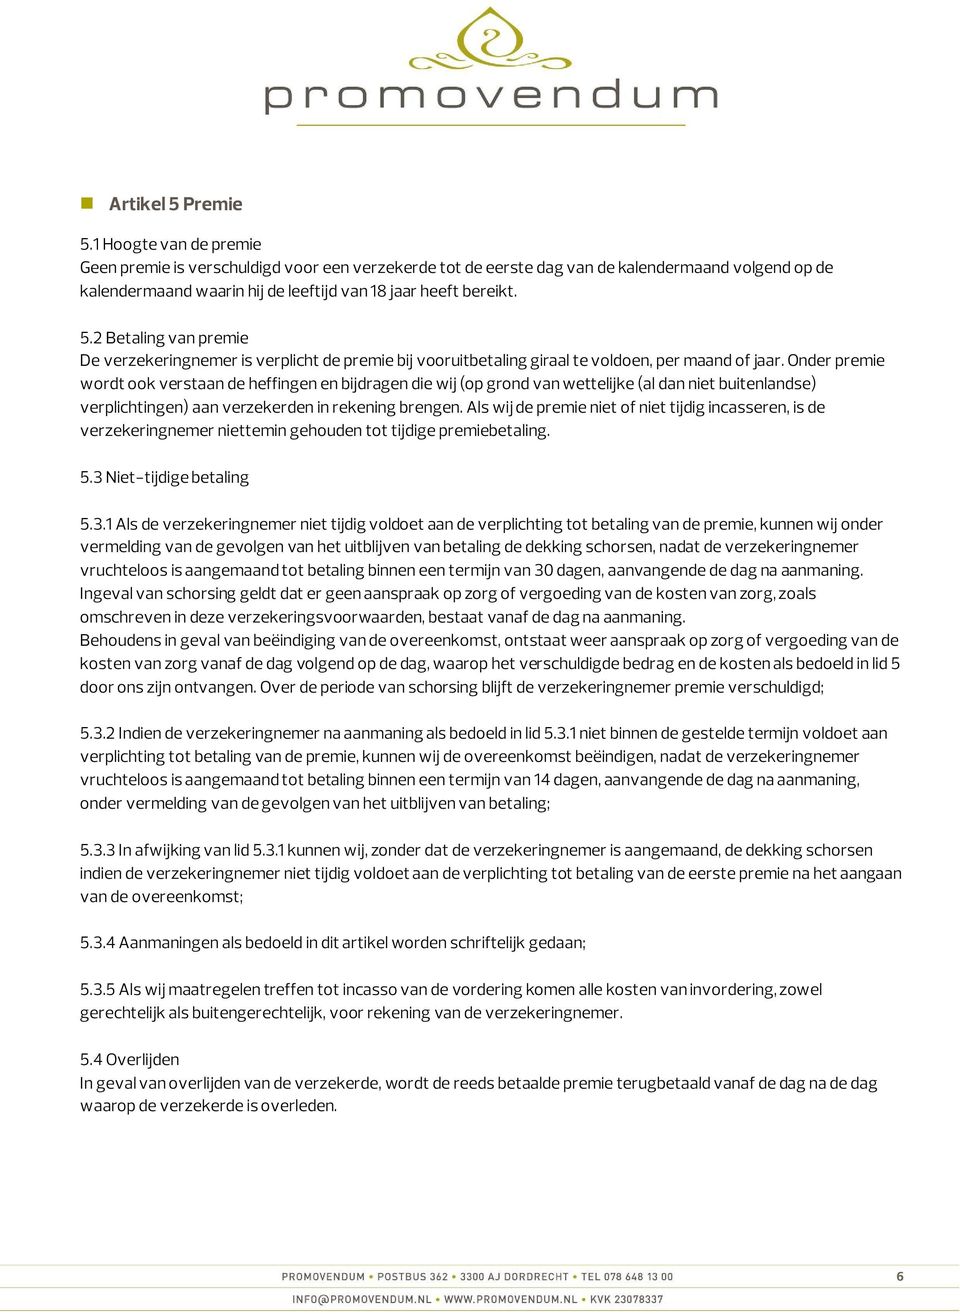 2 Betaling van premie De verzekeringnemer is verplicht de premie bij vooruitbetaling giraal te voldoen, per maand of jaar.